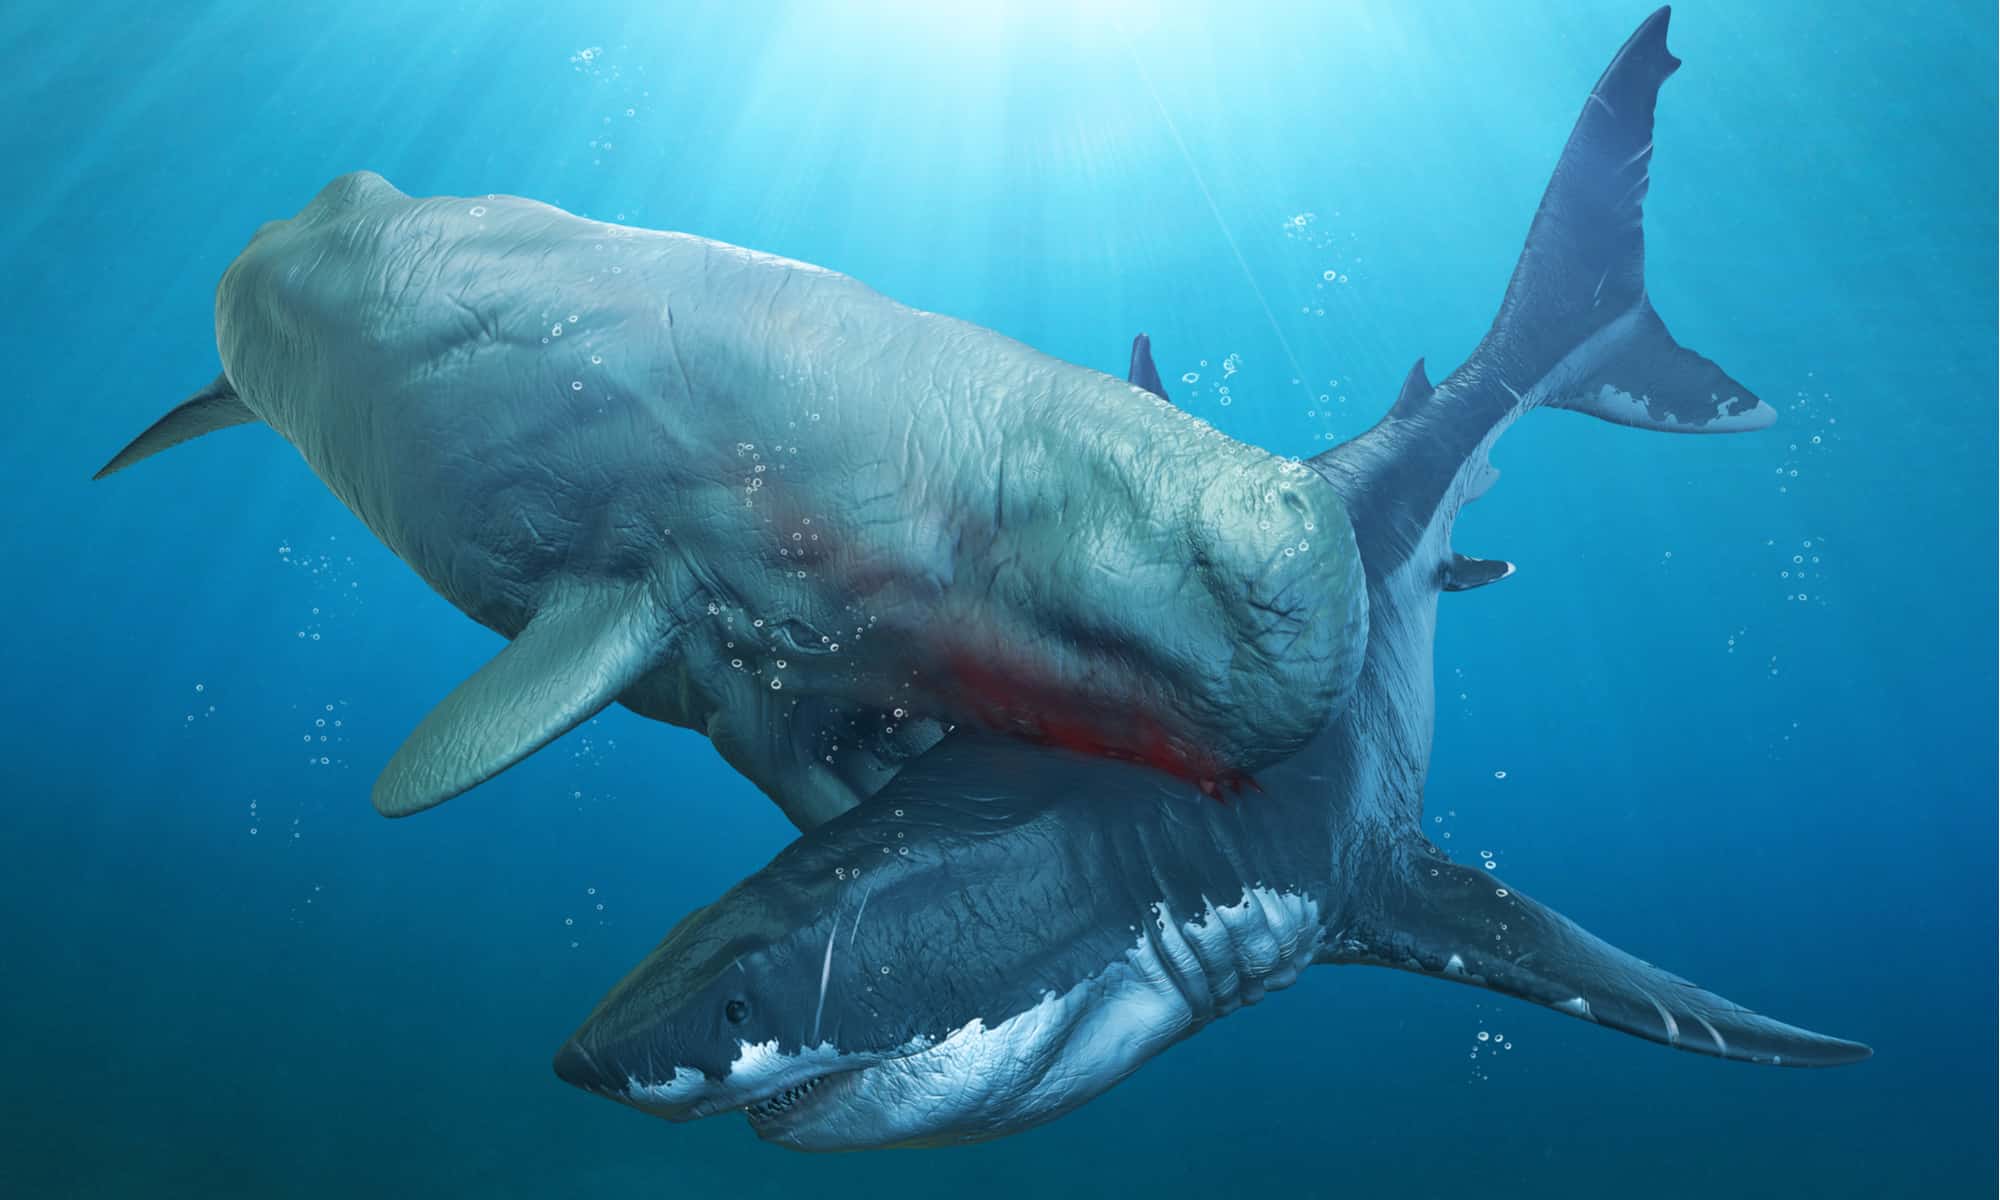 megalodon vs giant mosasaur